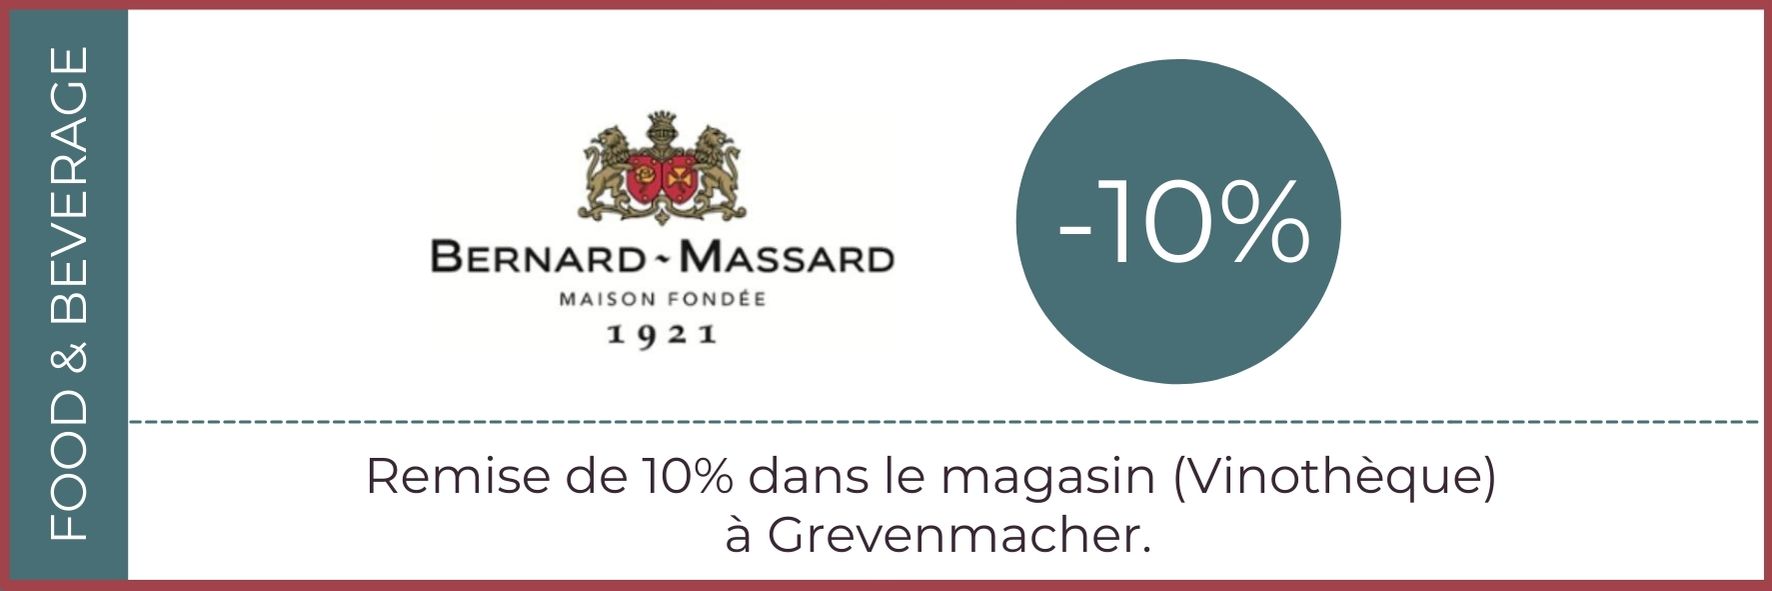 Bernard-Massard coupon